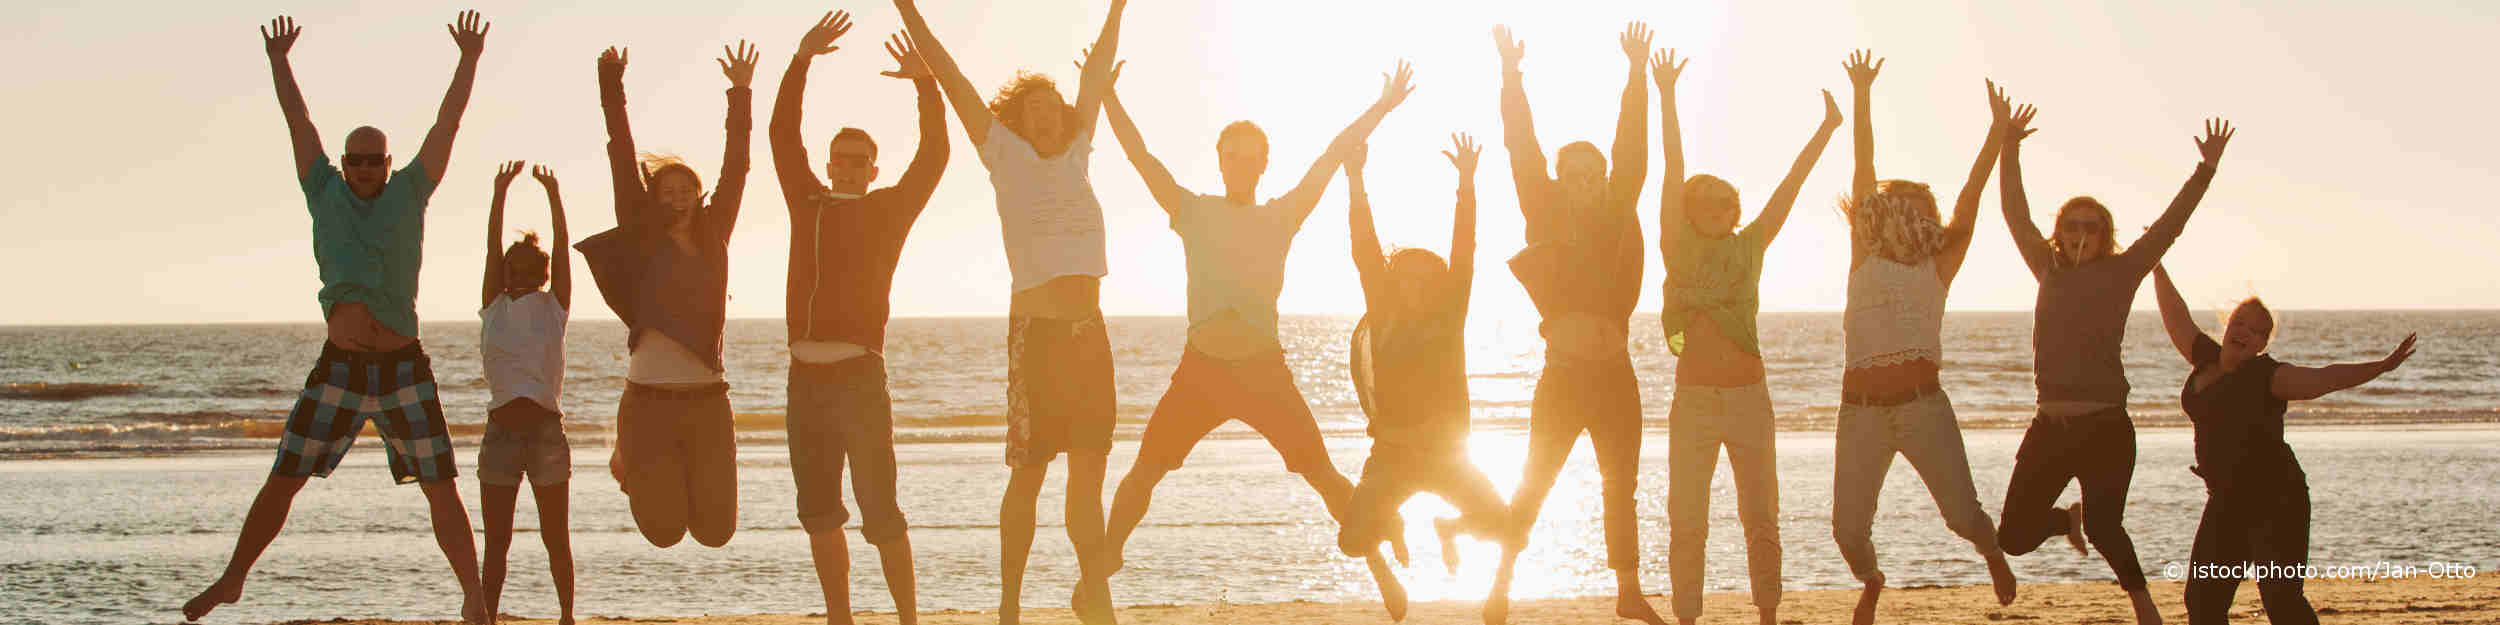 Junge Leute haben auf DocInsider die Tipps zur Stärkung des Immunsystems gelesen und hüpfen im Sonnenuntergang auf dem Sand am Meer.